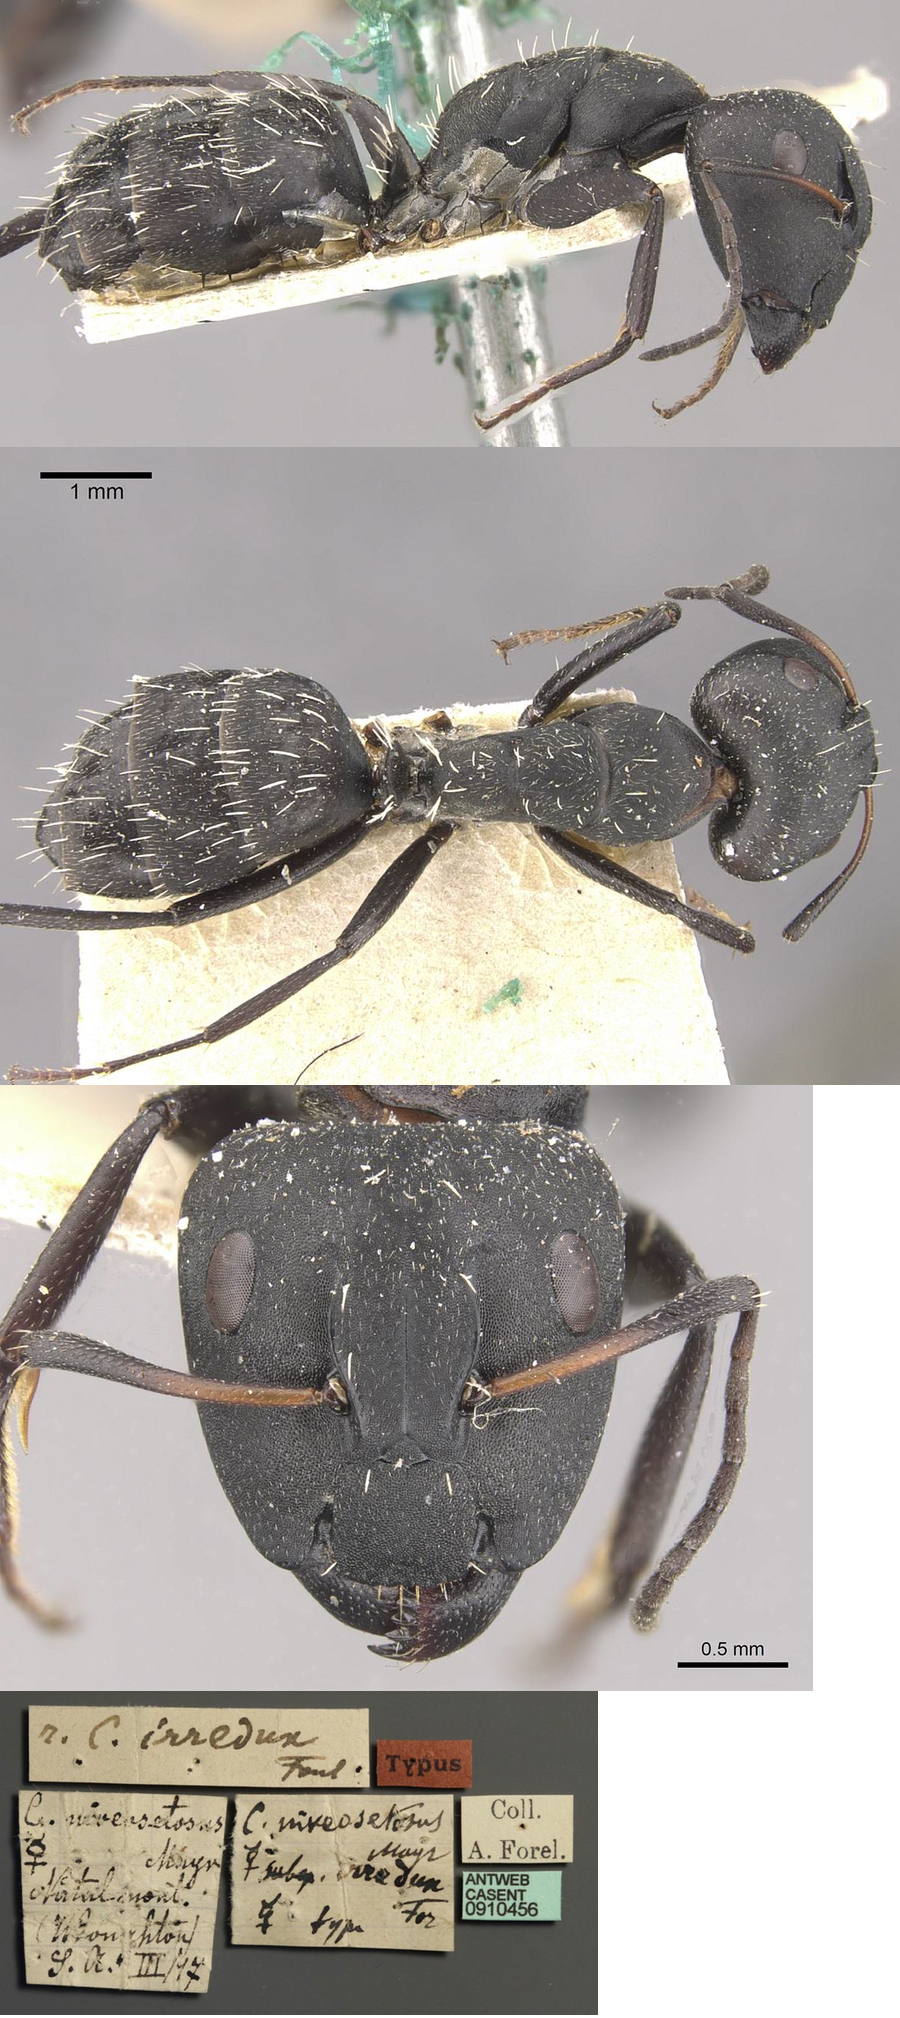 Camponotus niveosetosus irredux major